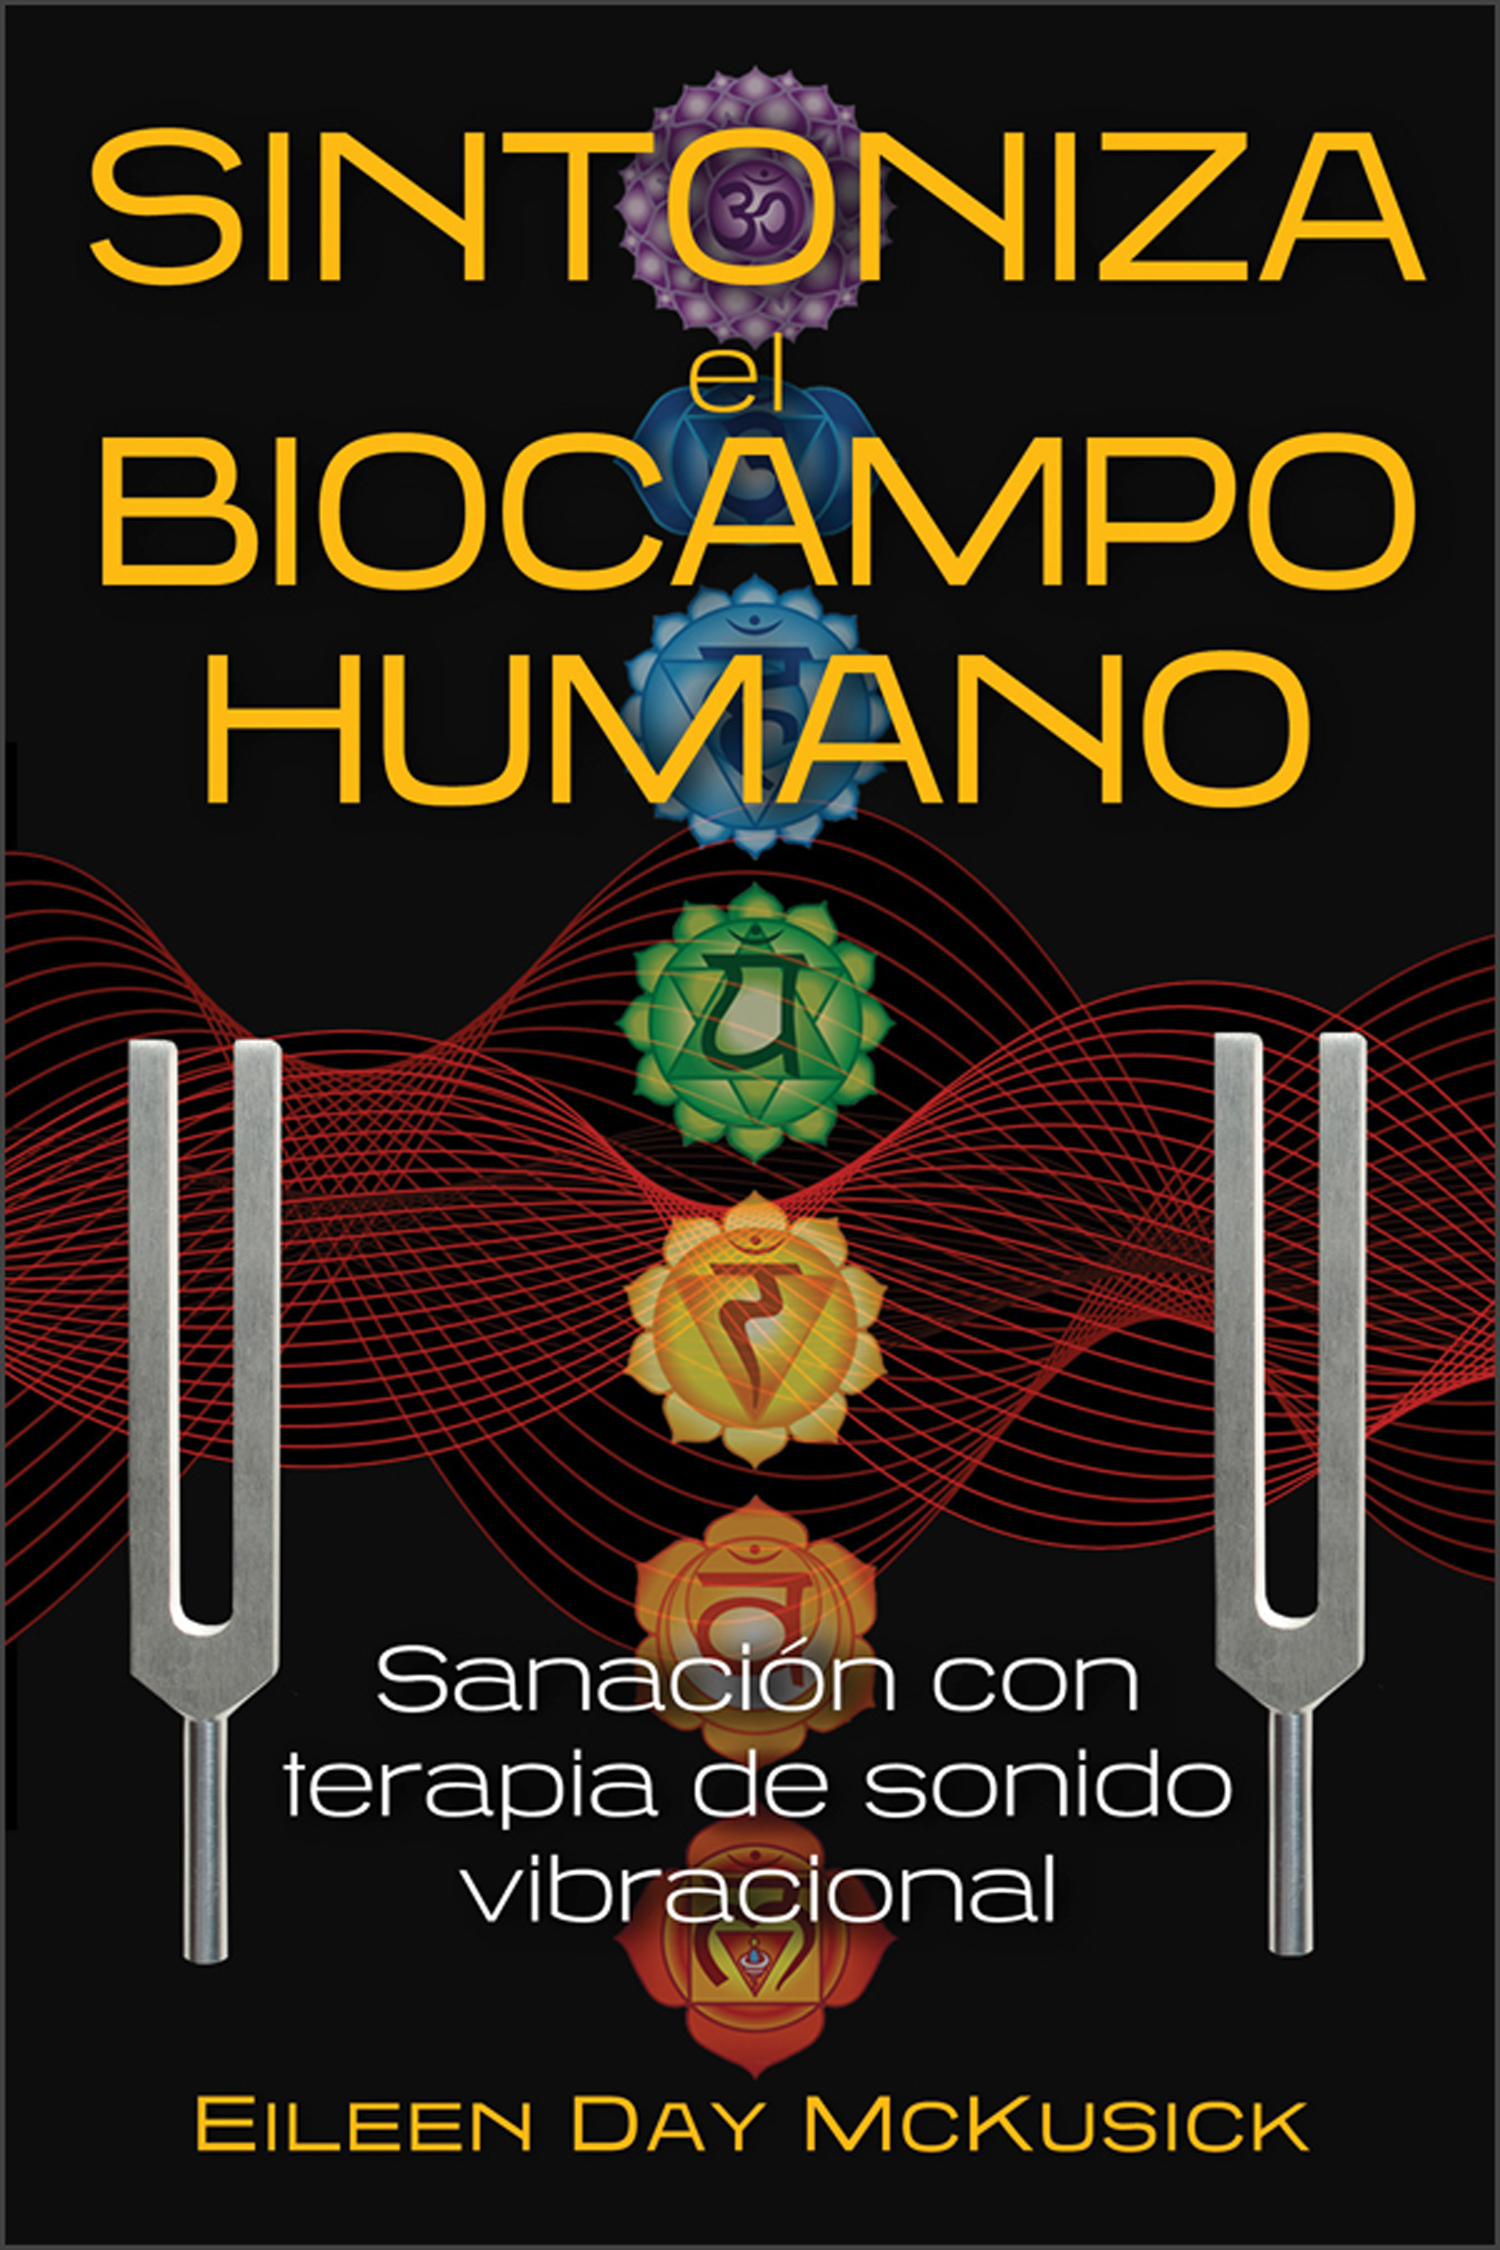 Sintoniza el biocampo humano. Sanación con terapia de sonido vibracional